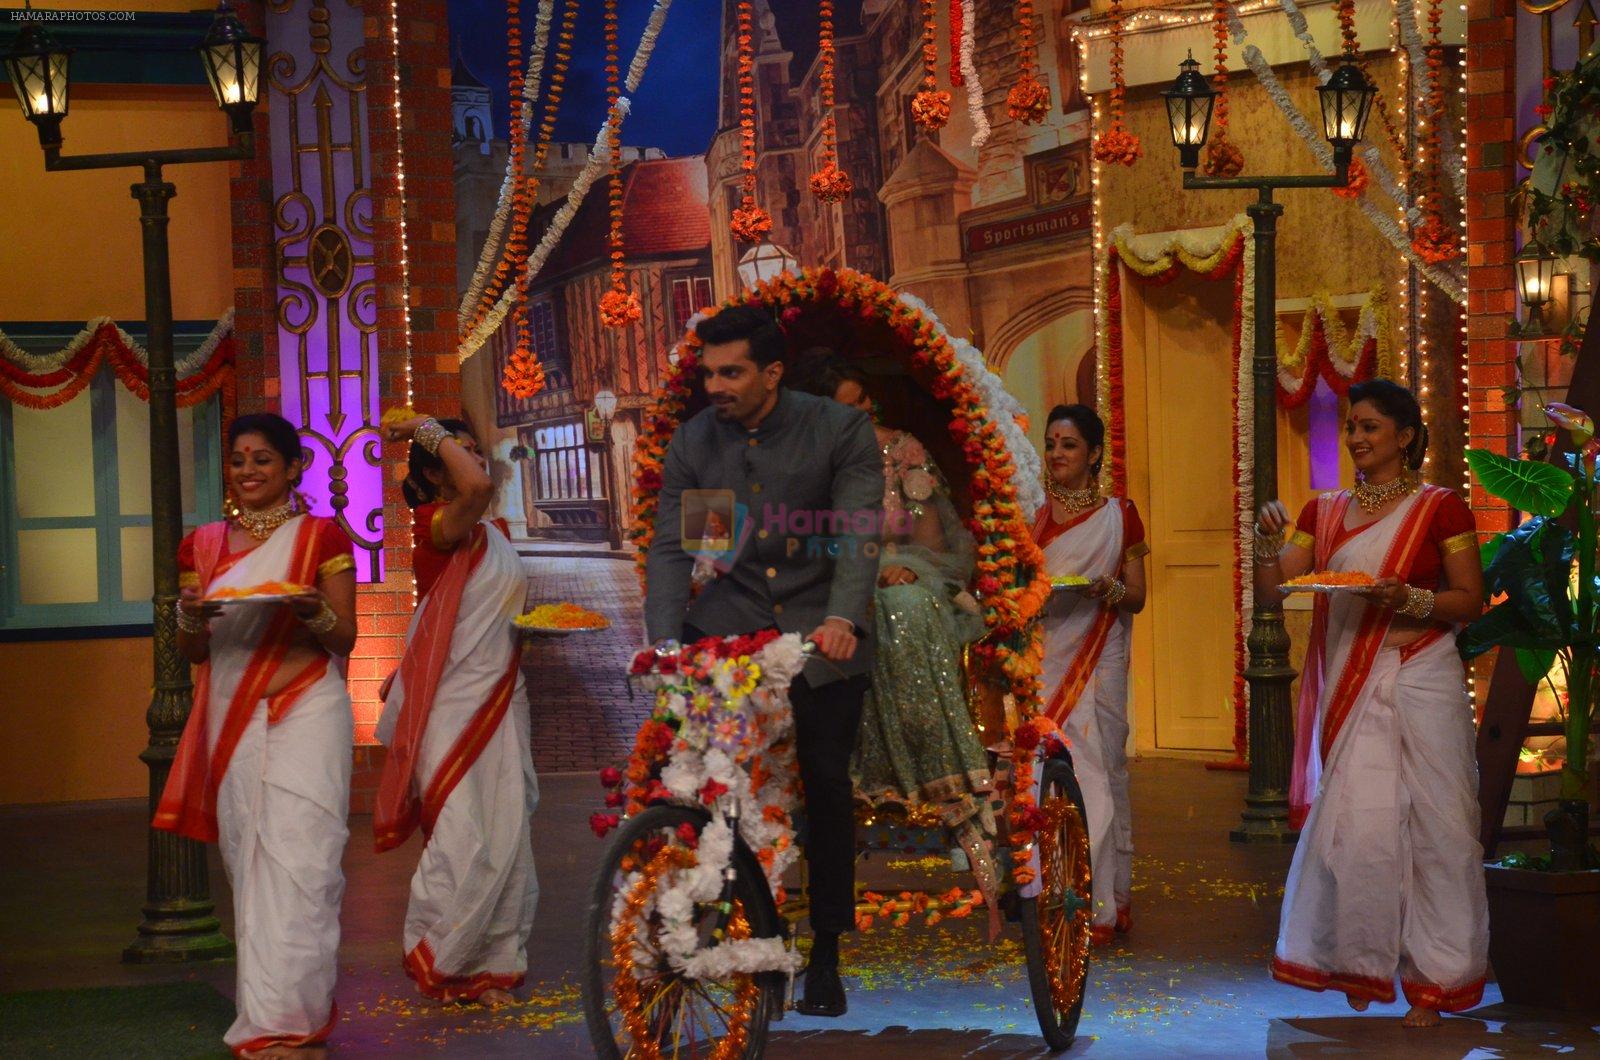 Karan Singh Grover and Bipasha Basu on the sets of Kapil Sharma Show on 28th May 2016